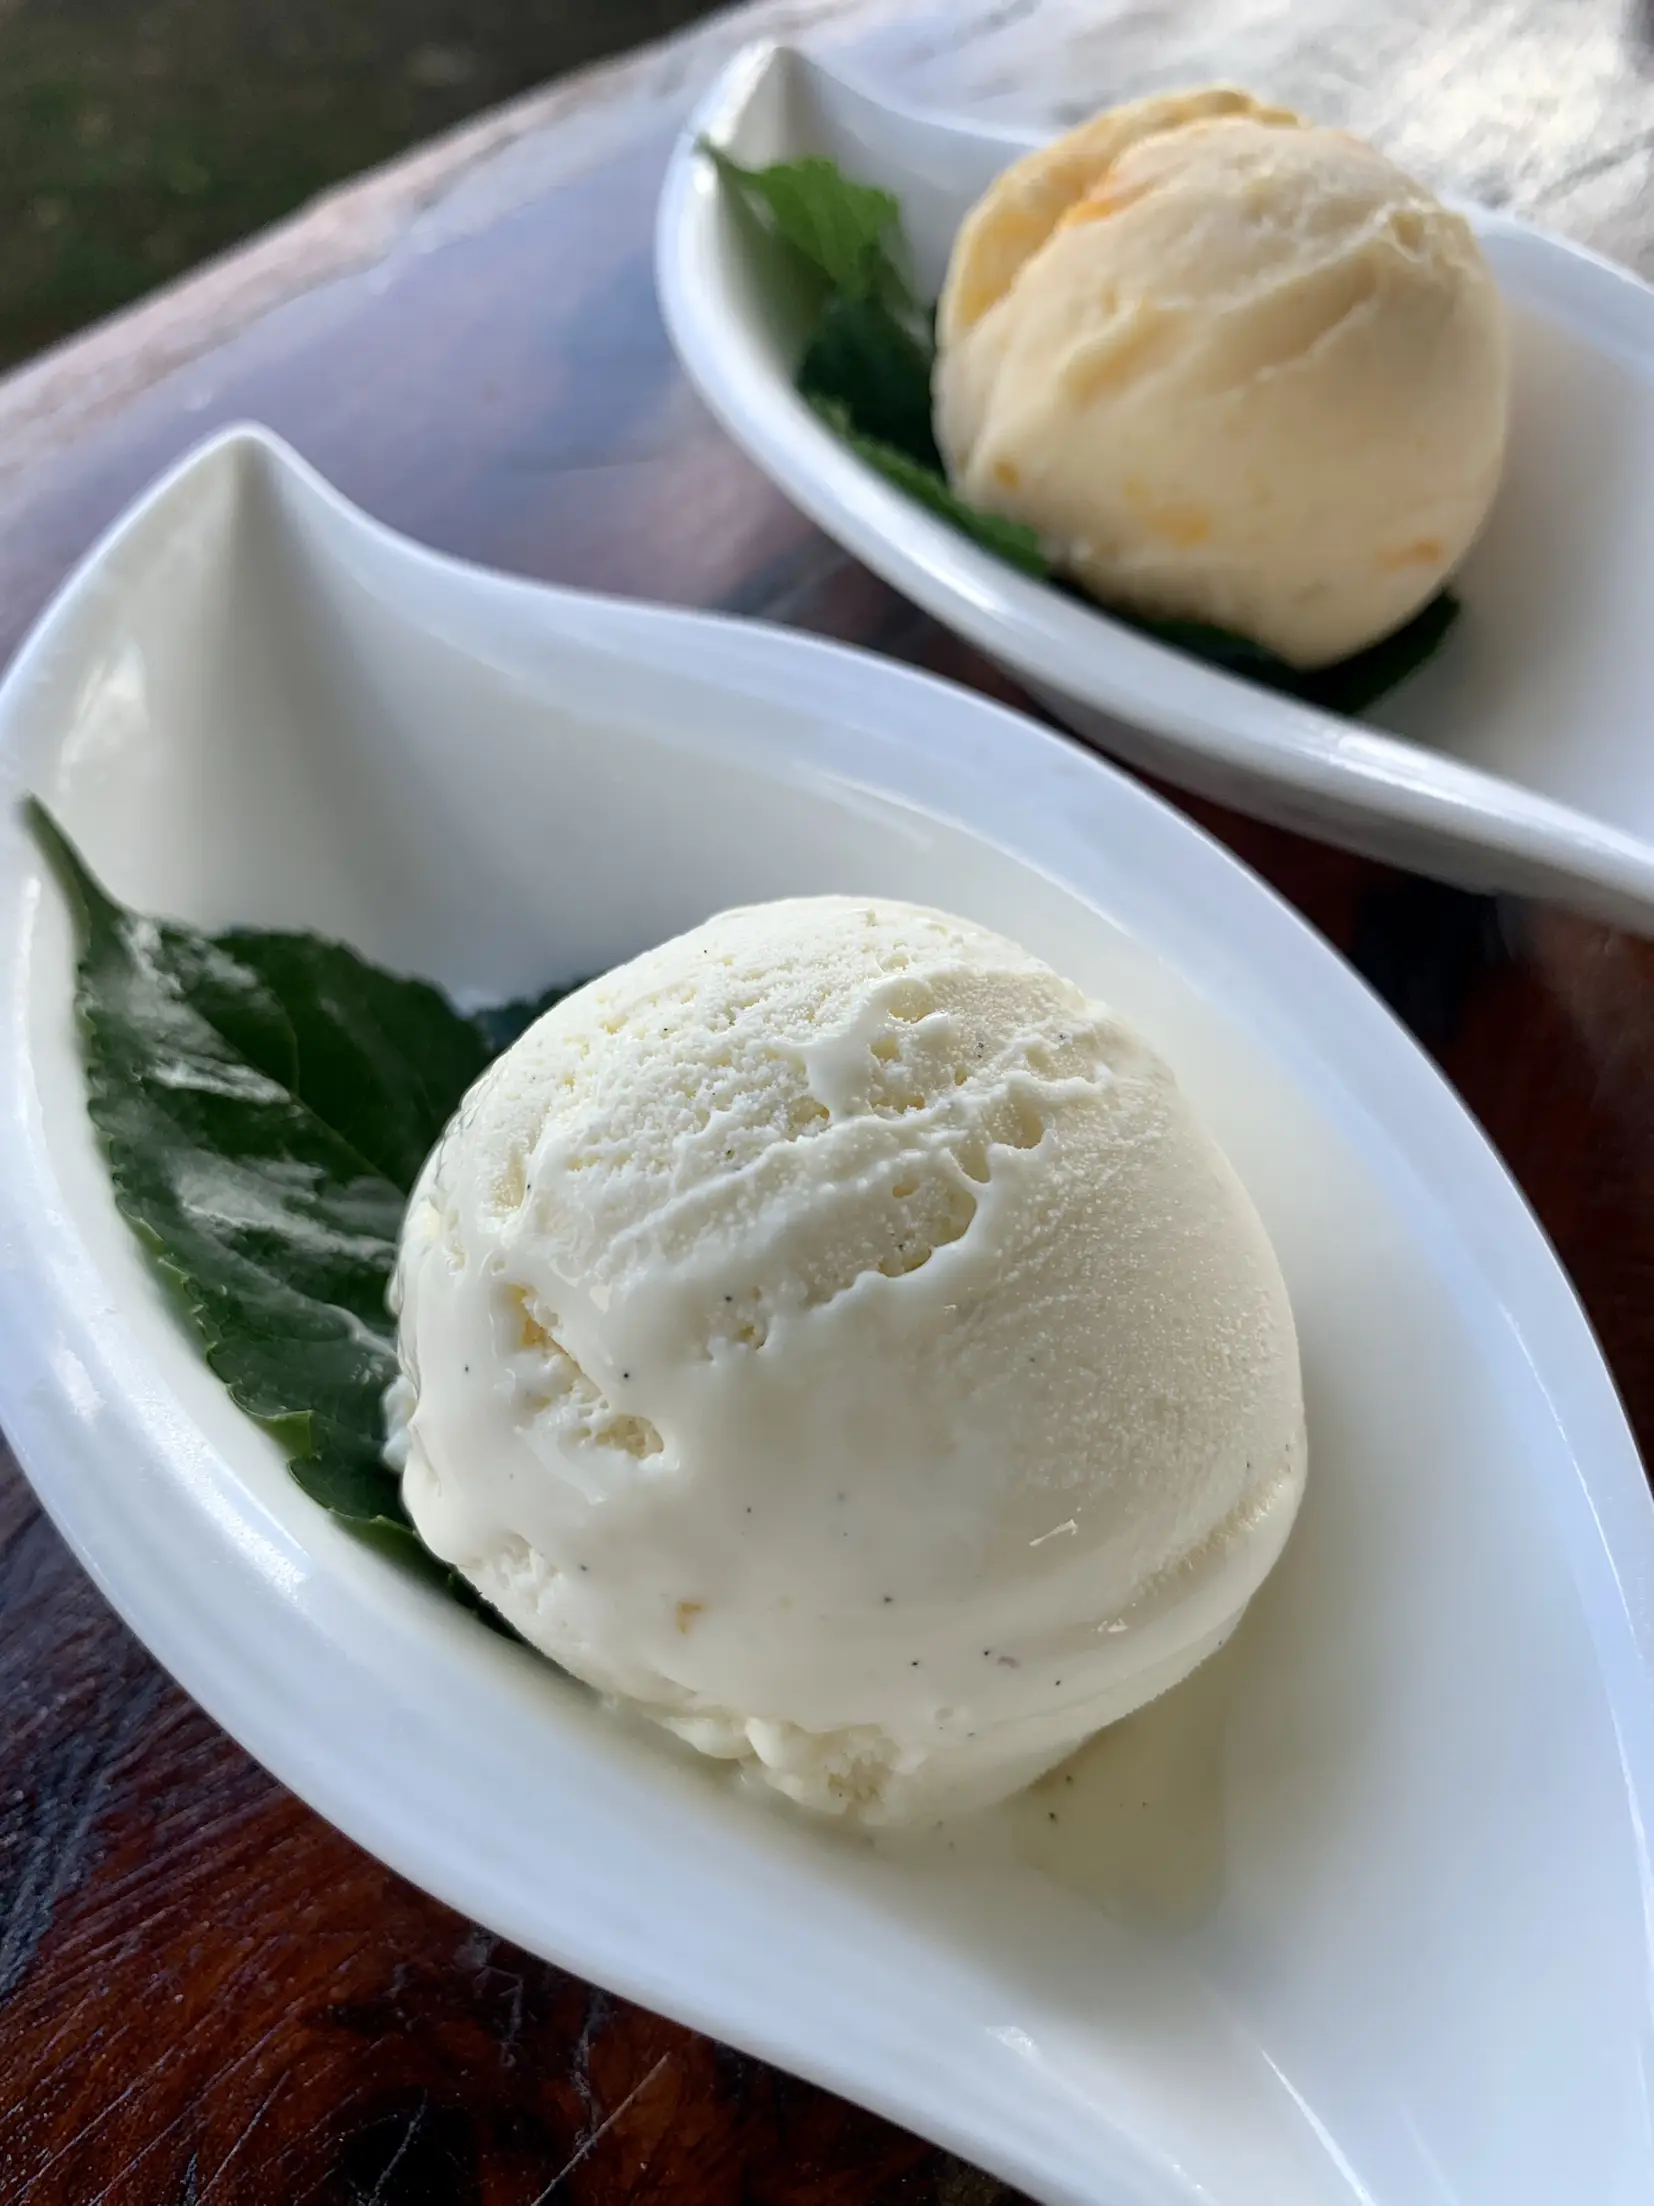 Ninja Creami Vanilla Ice Cream Recipe - Recipes From A Pantry